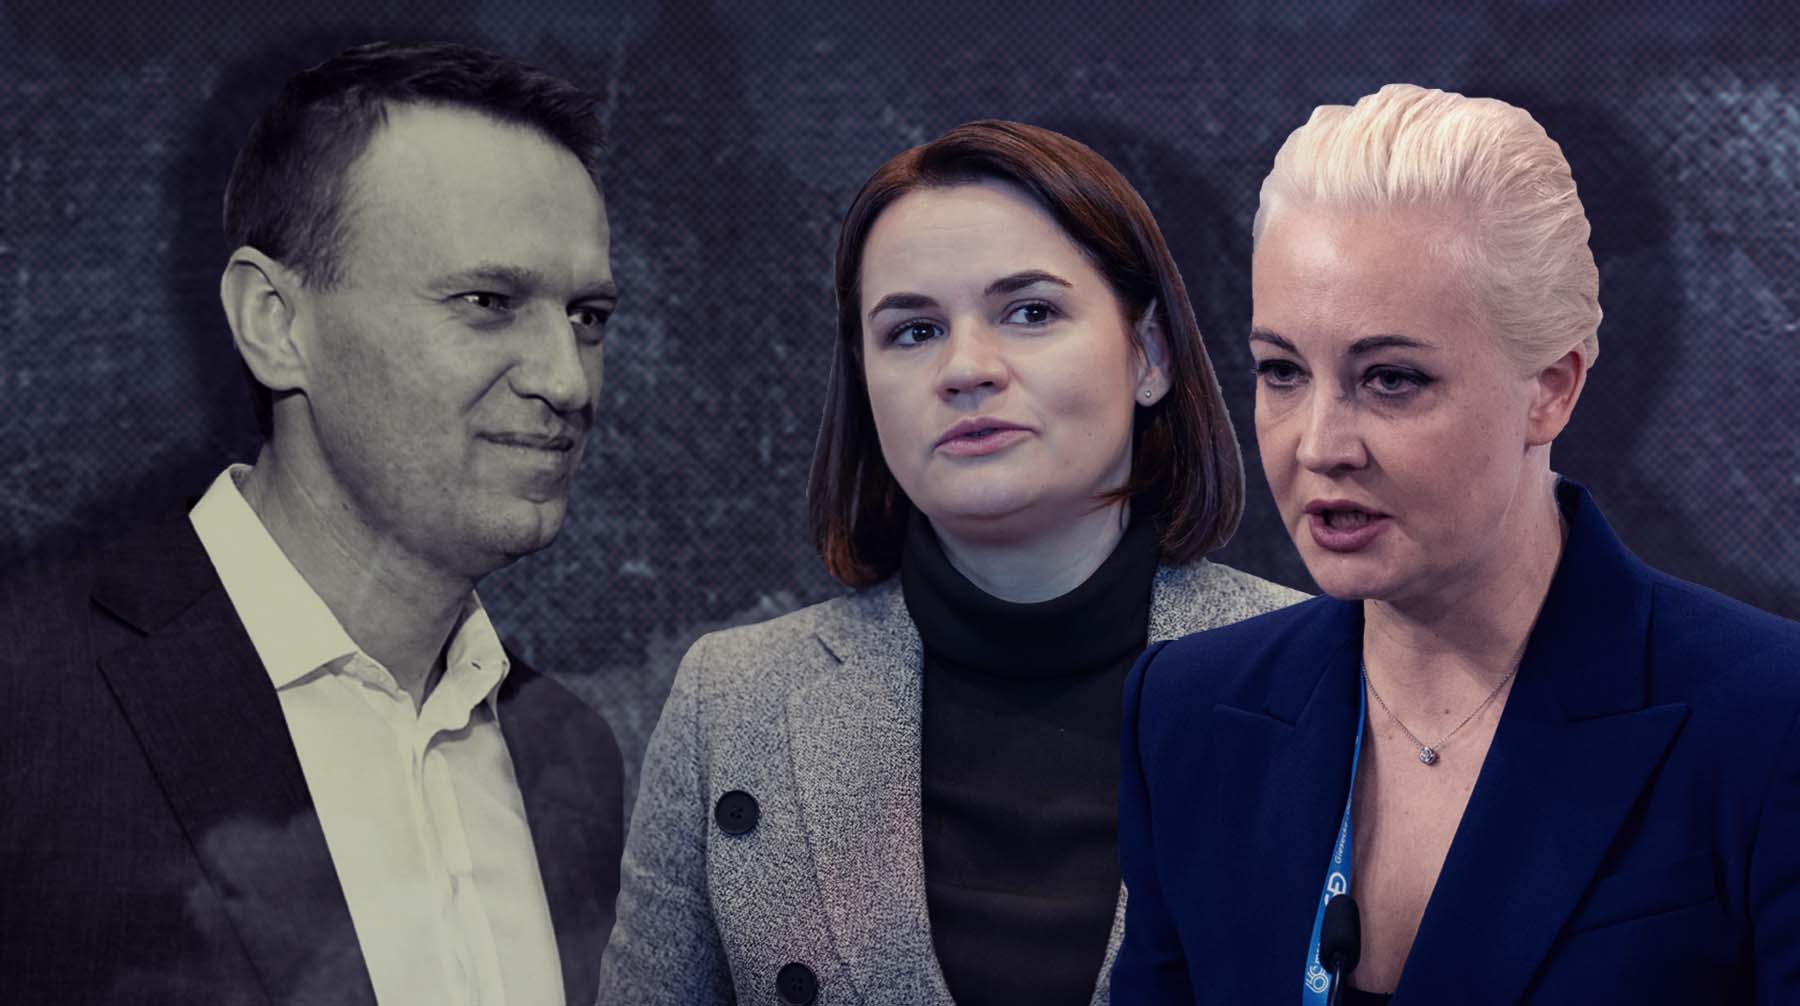 Юлия Навальная повторит судьбу Тихановской? Политологи уверены, что вдова политика не сможет возглавить либеральную оппозицию